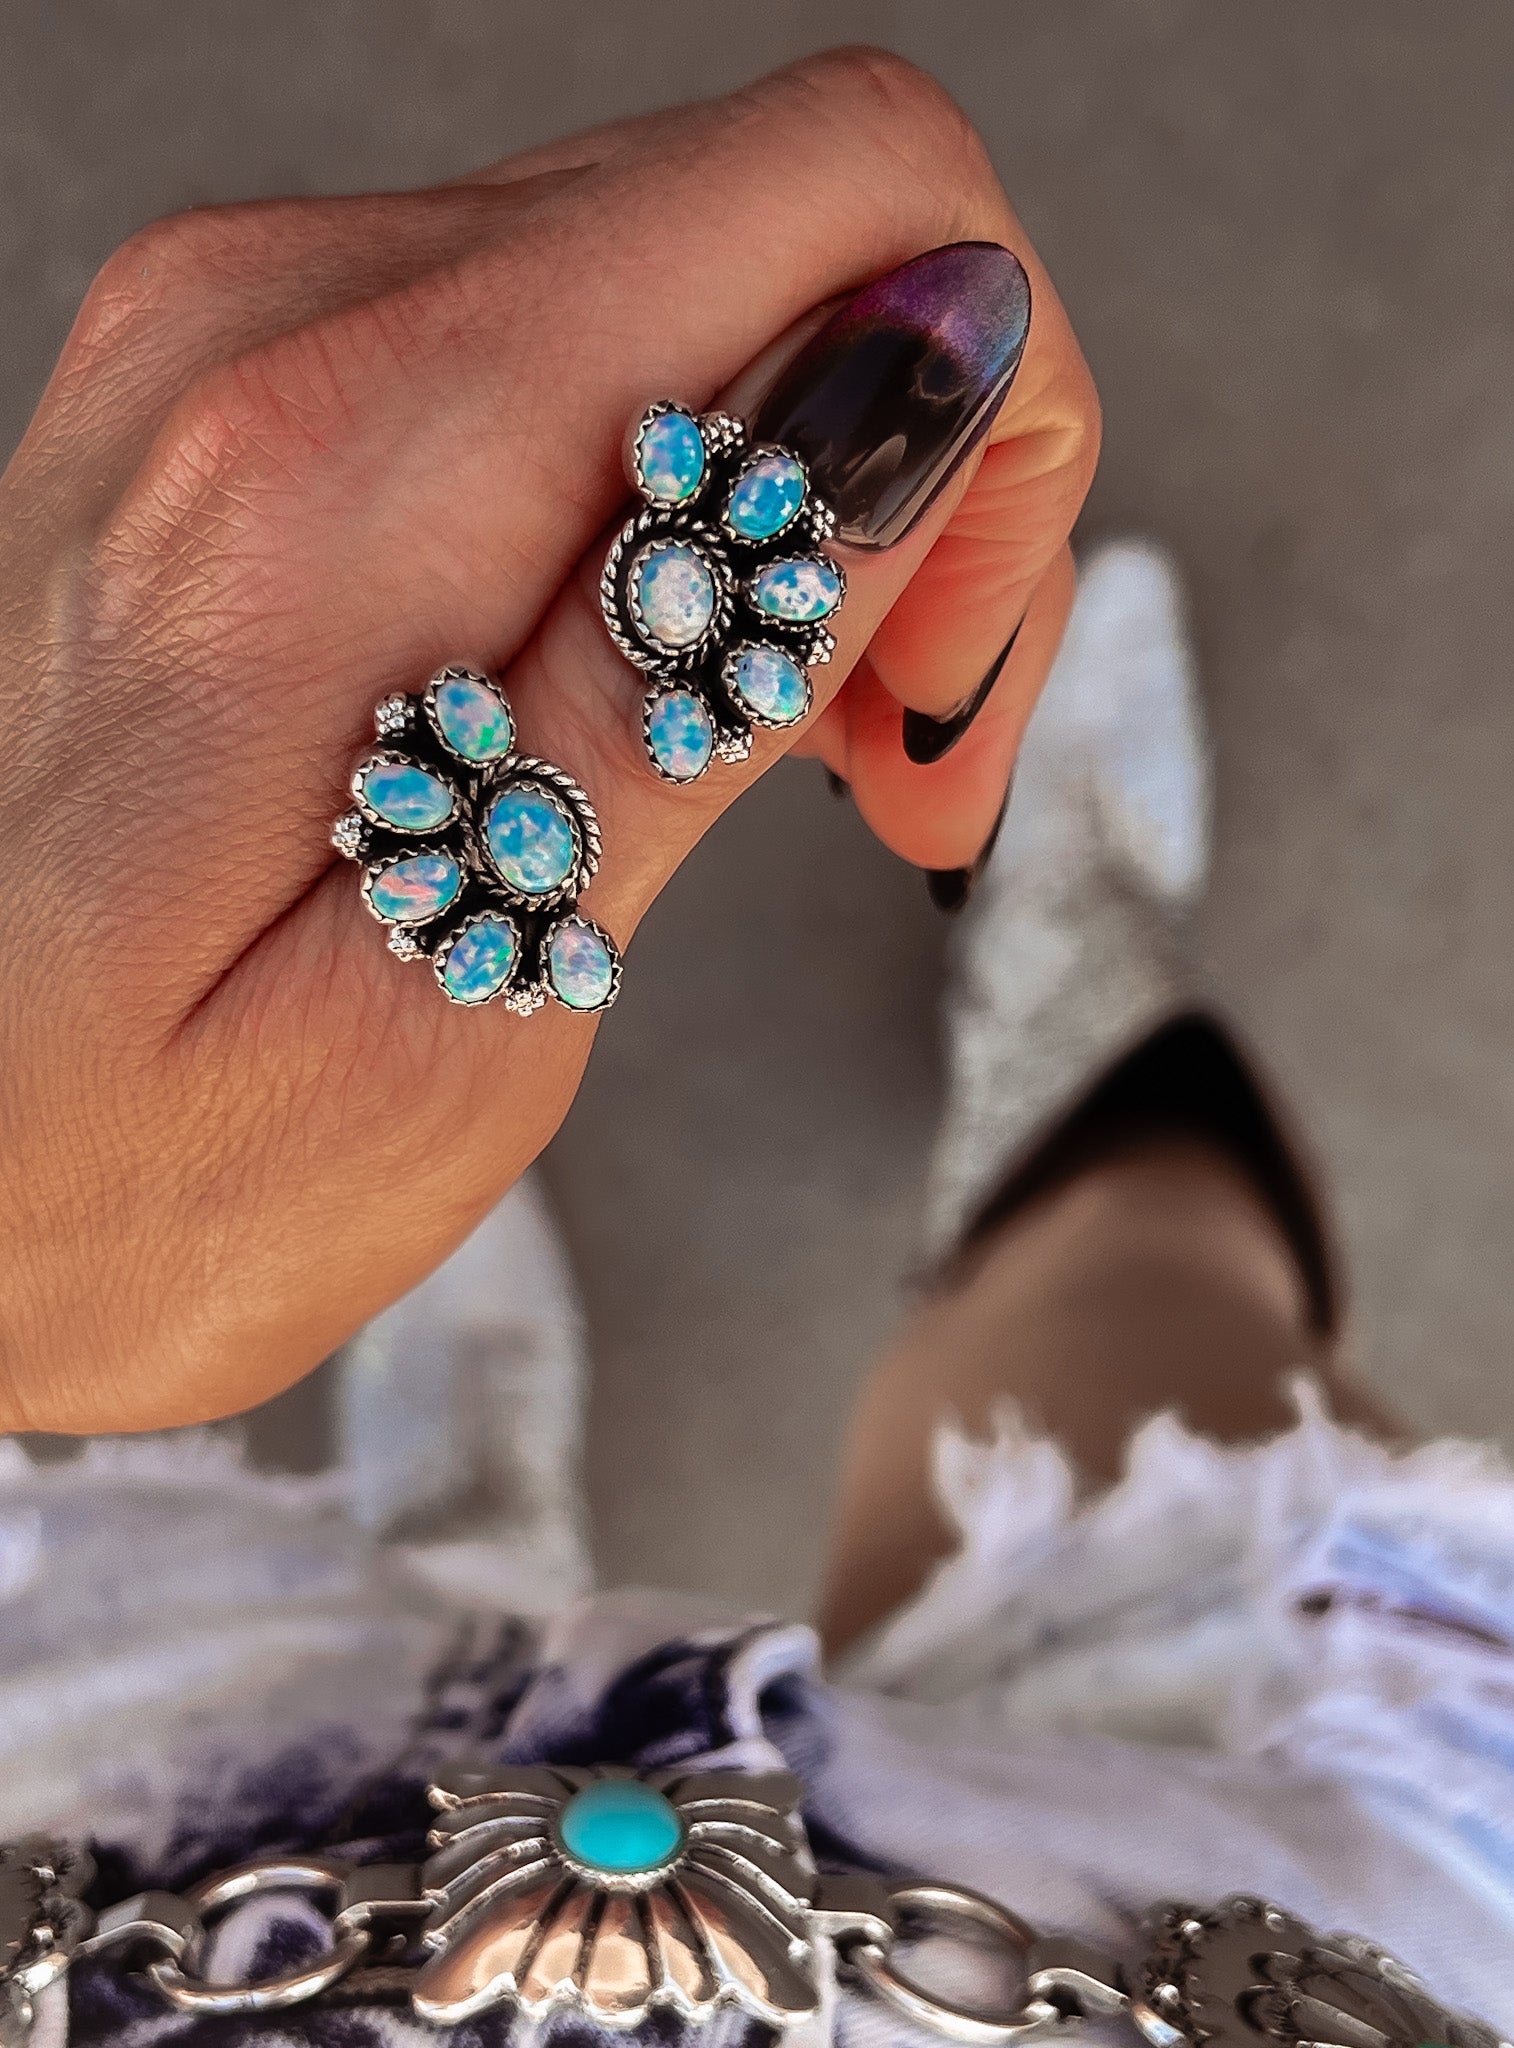 Cute Little Half Cluster Blossom Earrings-Earrings-Krush Kandy, Women's Online Fashion Boutique Located in Phoenix, Arizona (Scottsdale Area)